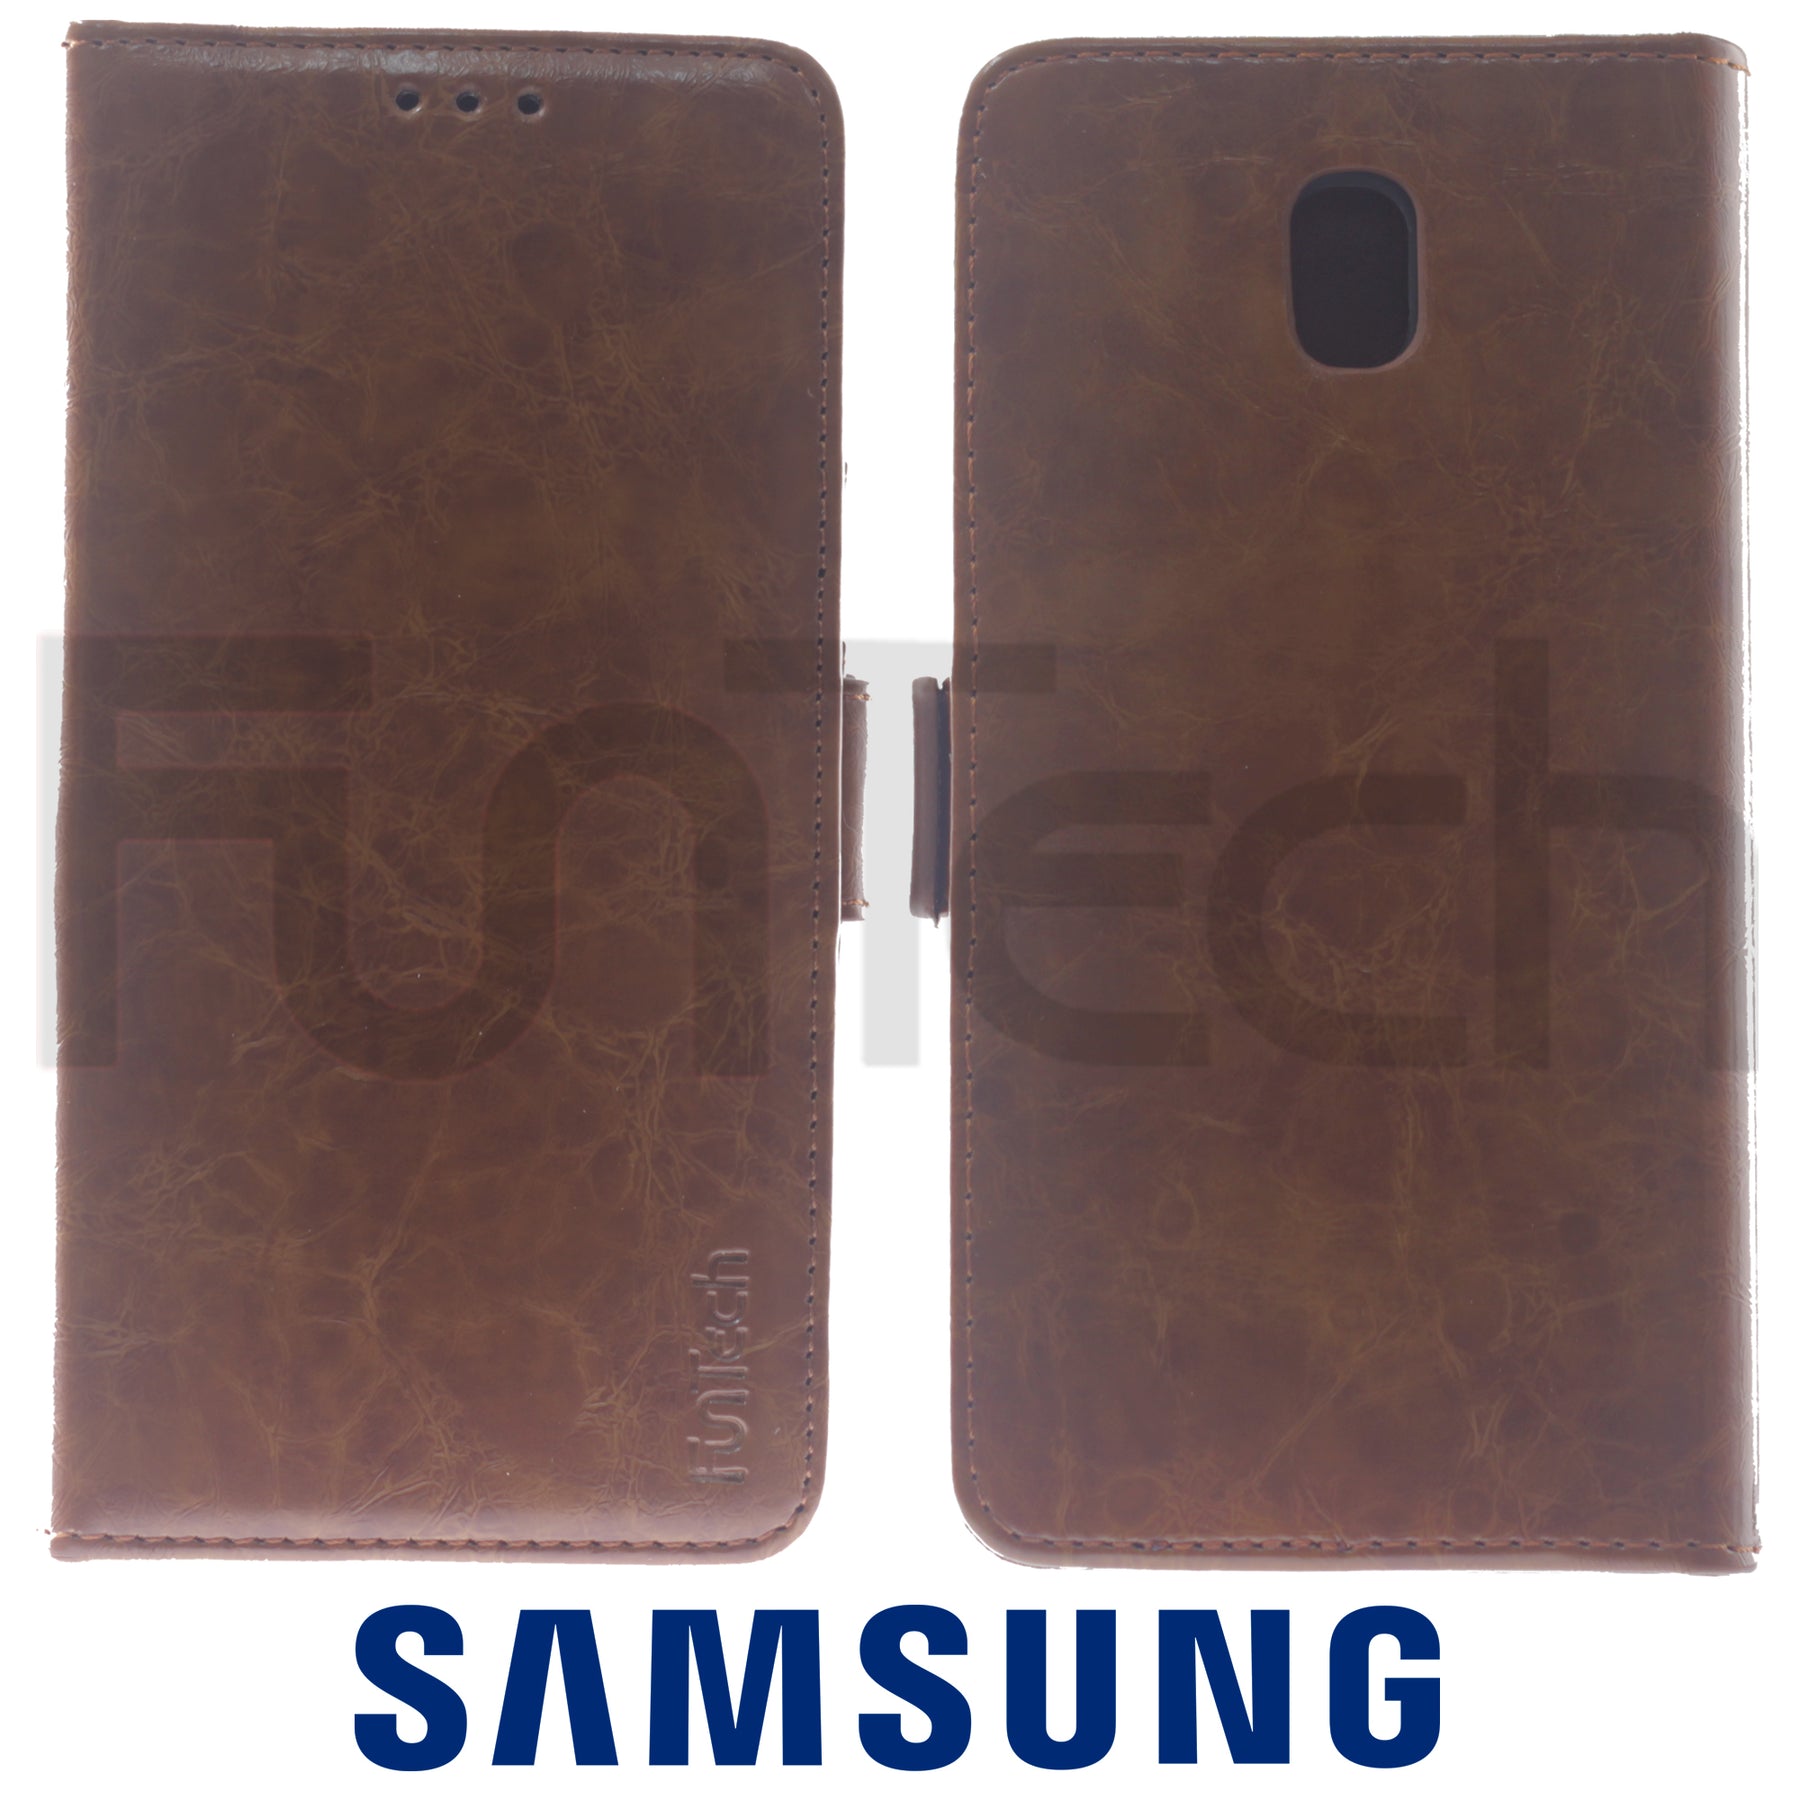 Samsung J5 2017, Leather Wallet Case, Color Brown.